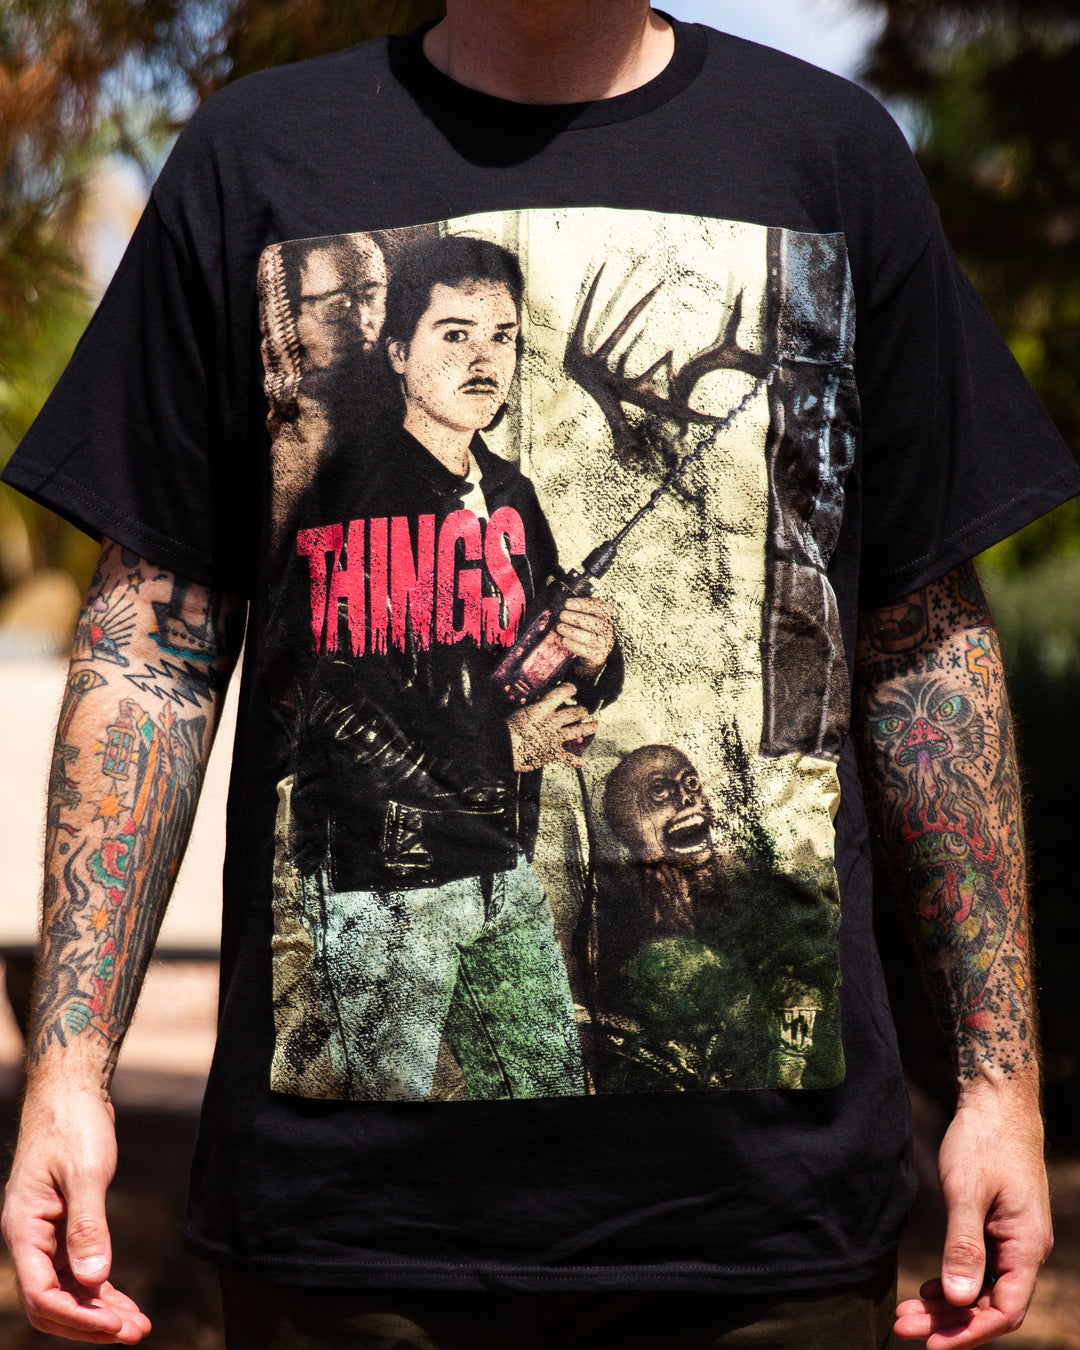 Things [T-Shirt]